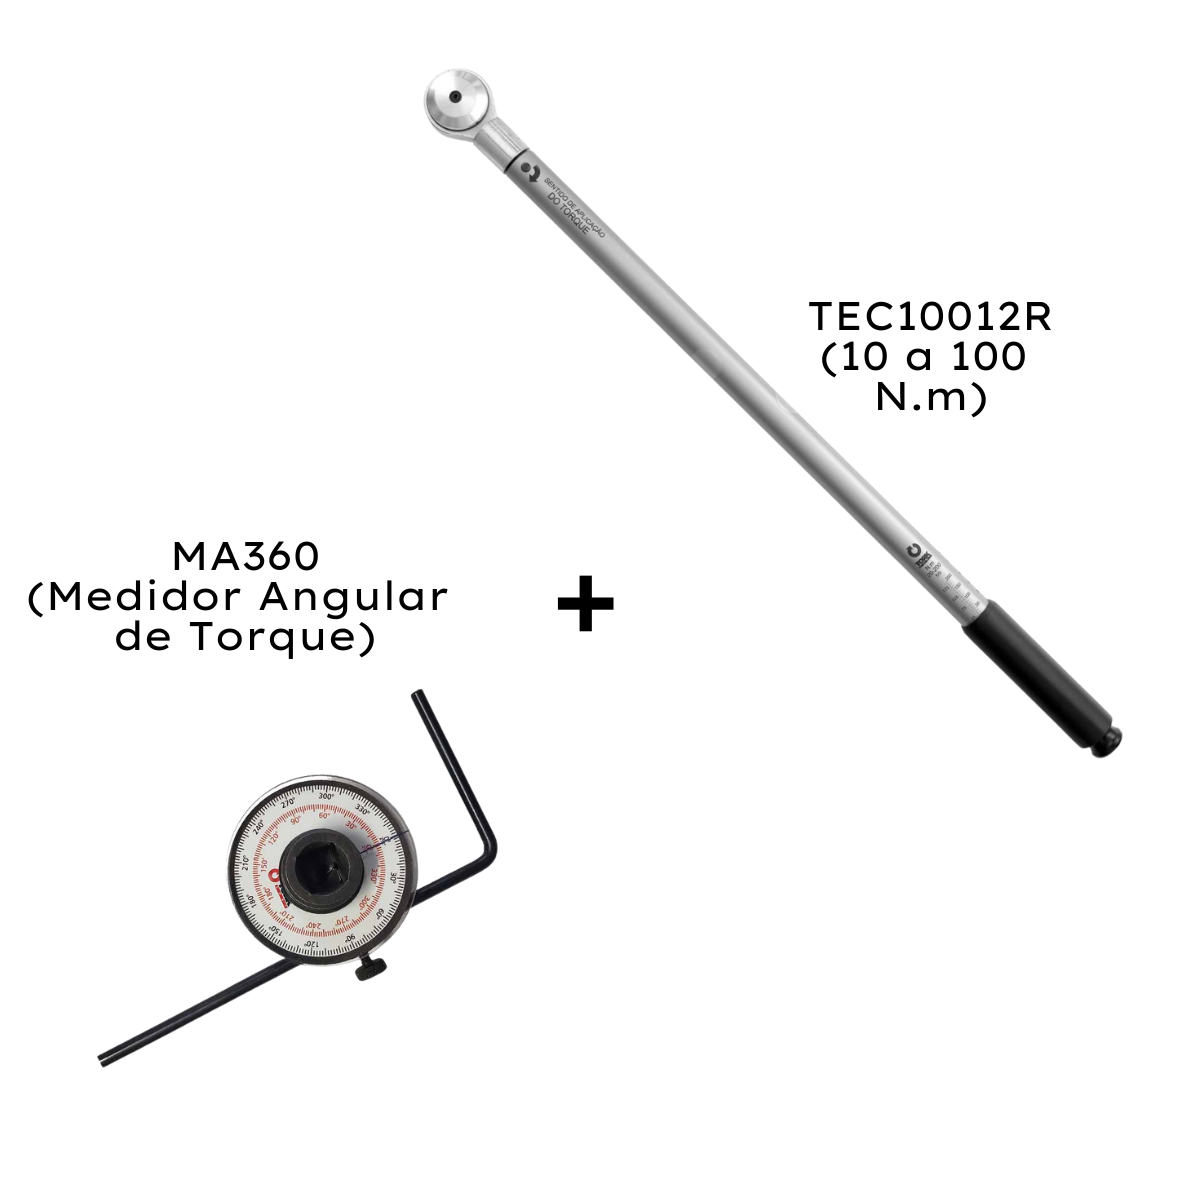 TEC10012R Torquímetro Estalo 10 a 100 N.m com Laudo RBC + MA360 Medidor Angular de Torque